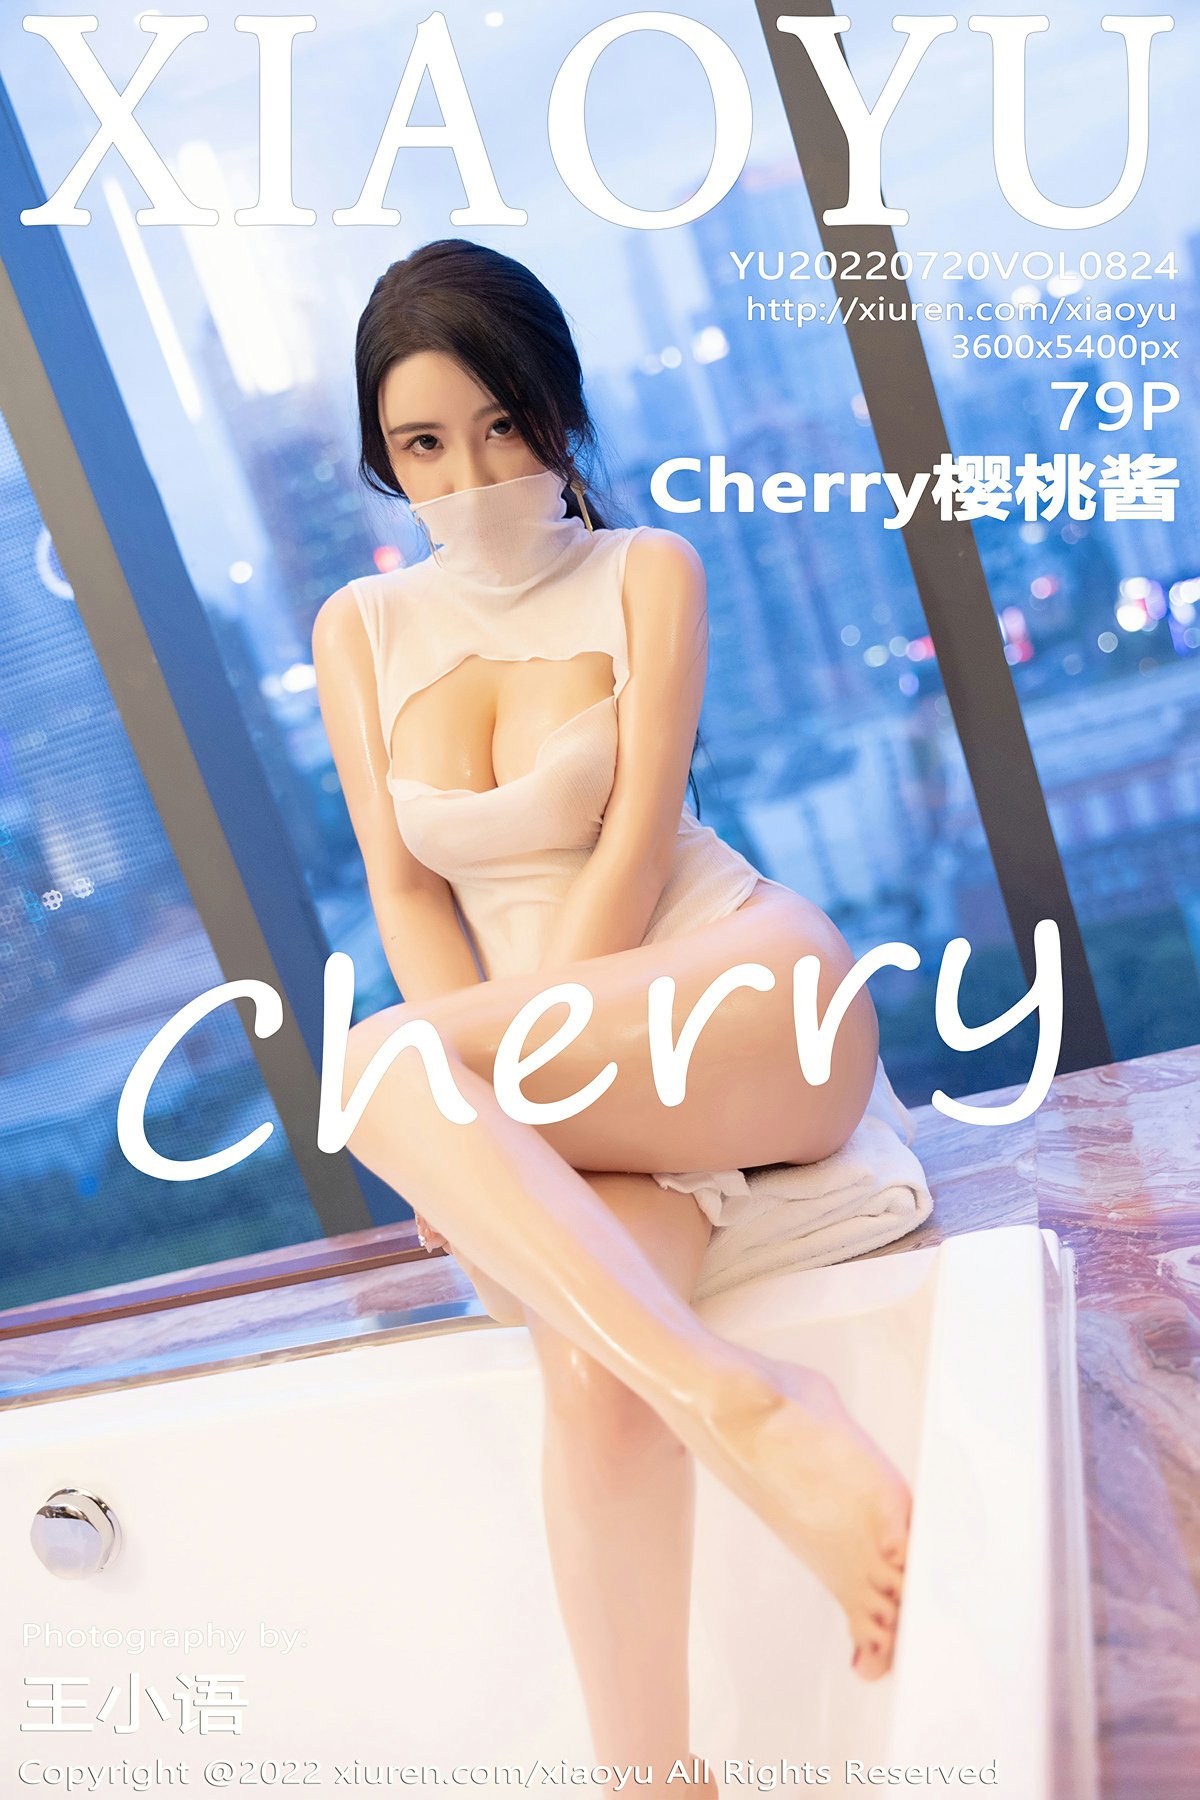 [XIAOYU语画界] 2022.07.20 VOL.824 Cherry樱桃酱 诱人原色丝袜 性感写真 [79+1P]